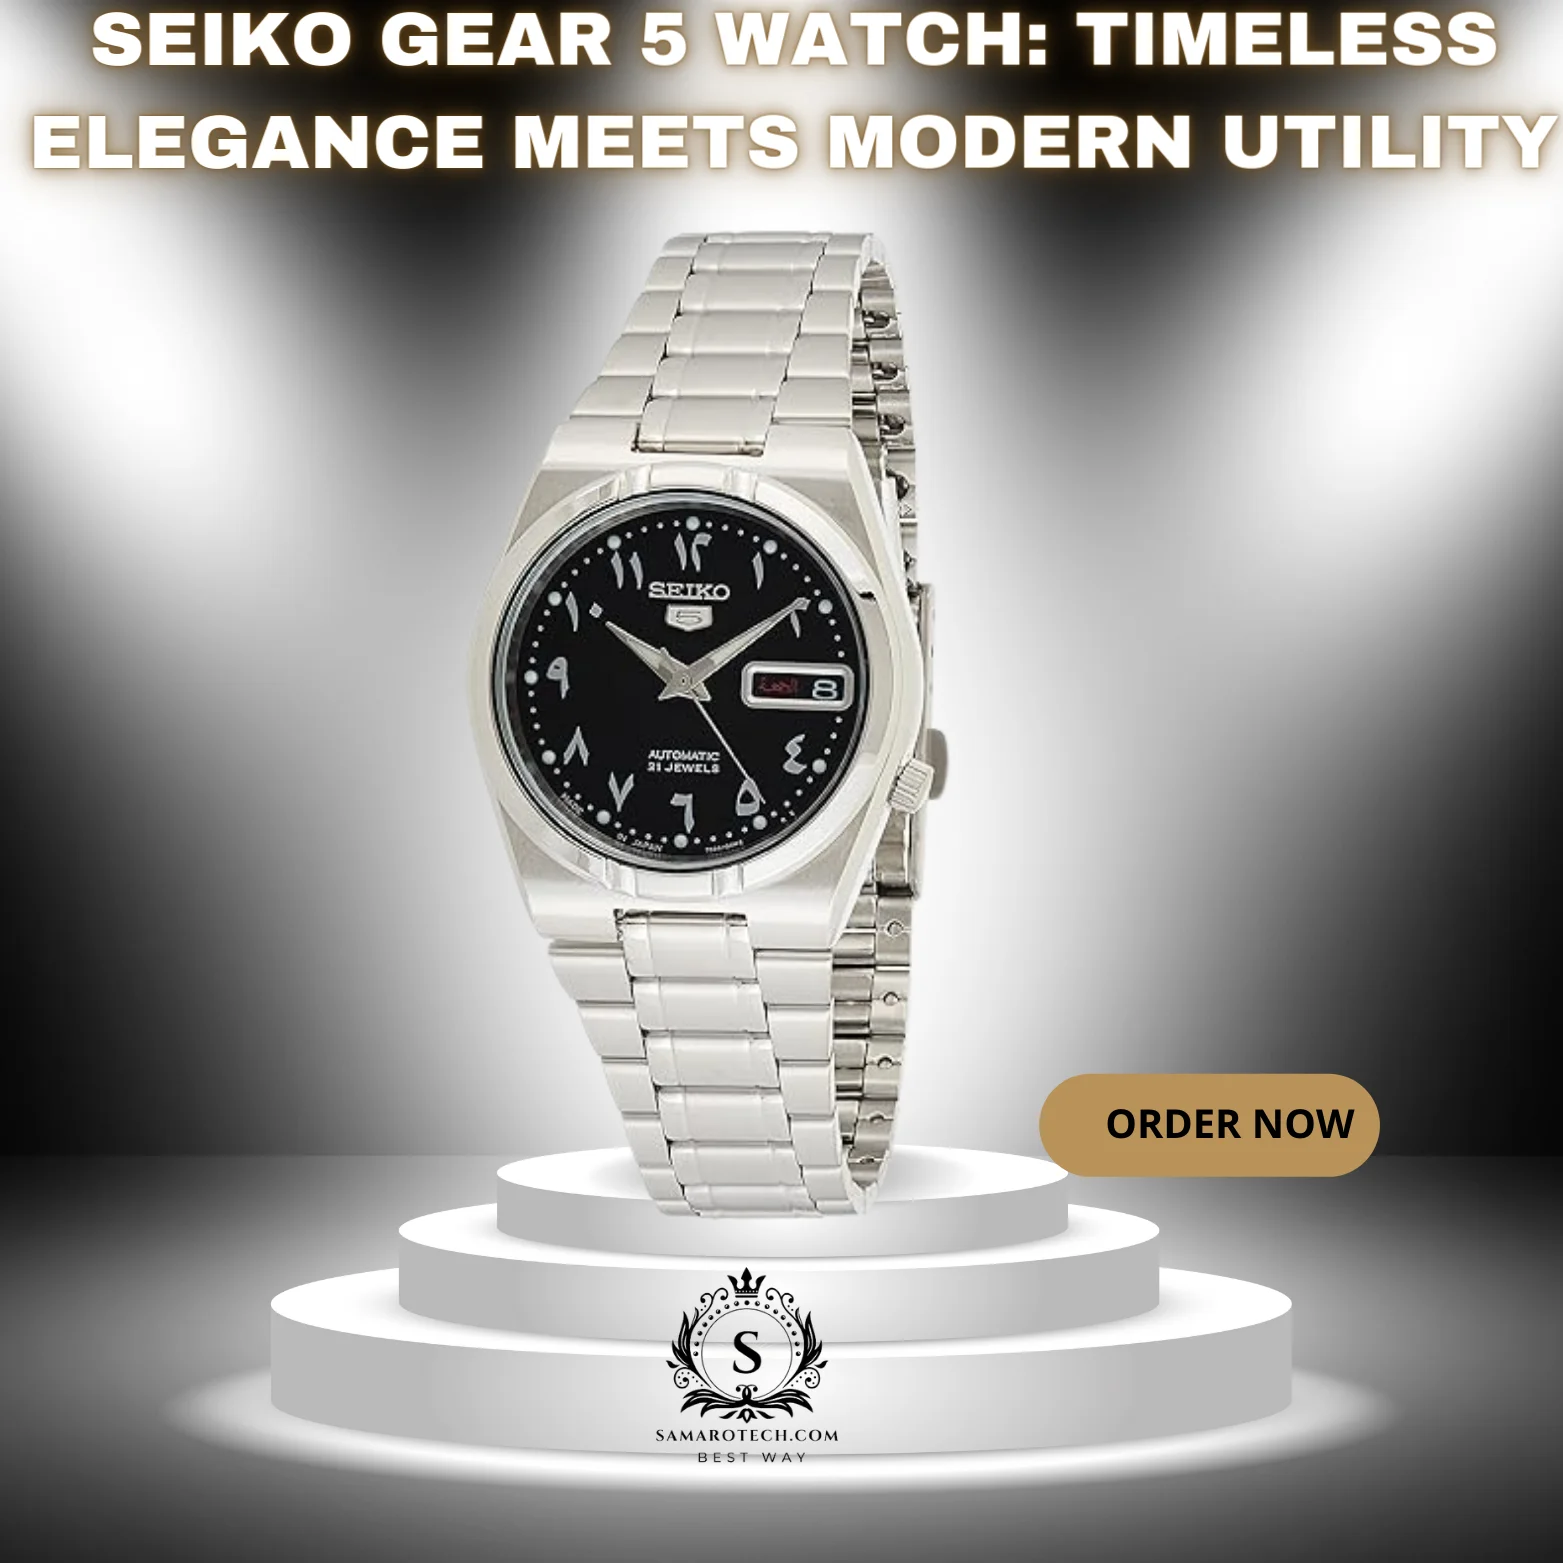 Seiko Gear 5 Watch: Timeless Elegance Meets Modern Utility